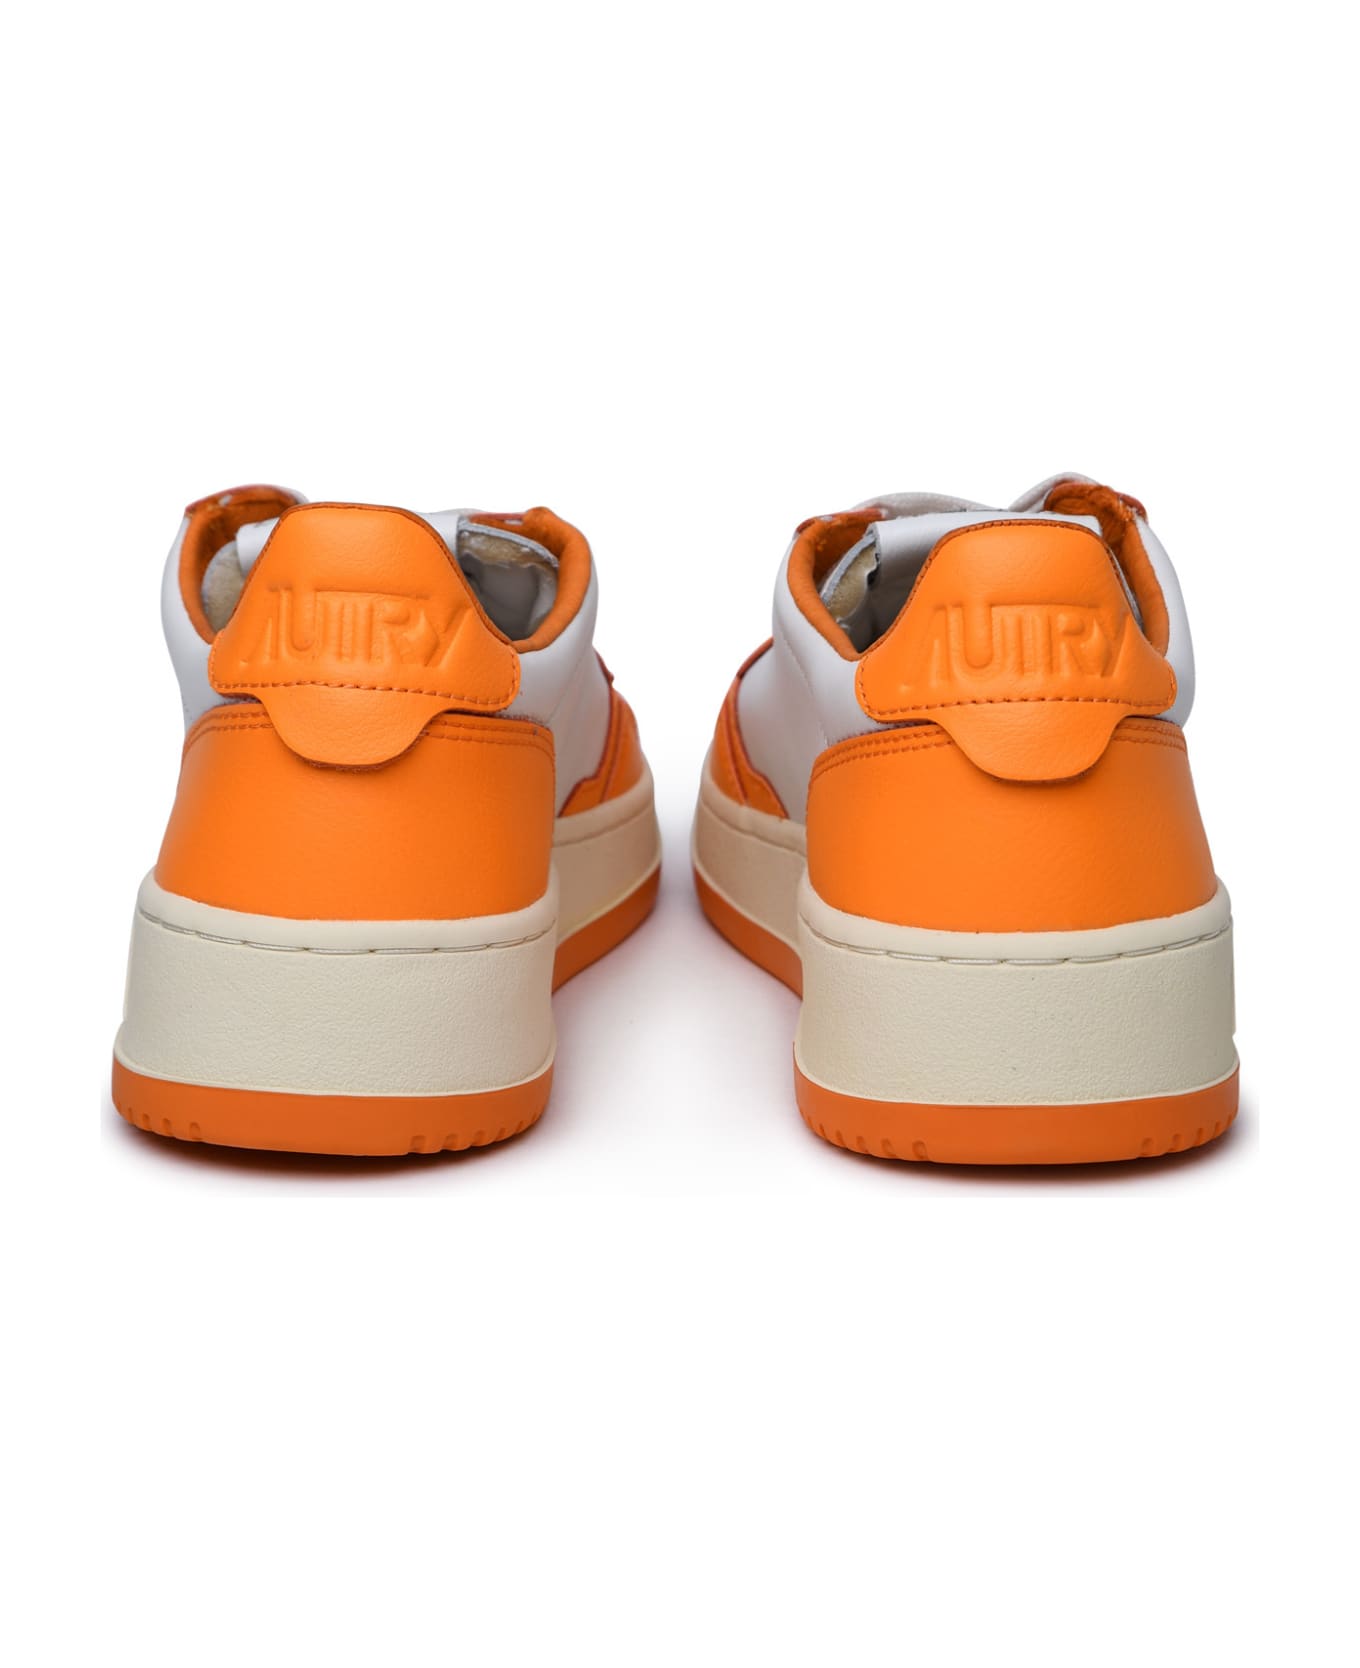 Autry 'medalist' Orange Leather Sneakers - White Orange ウェッジシューズ